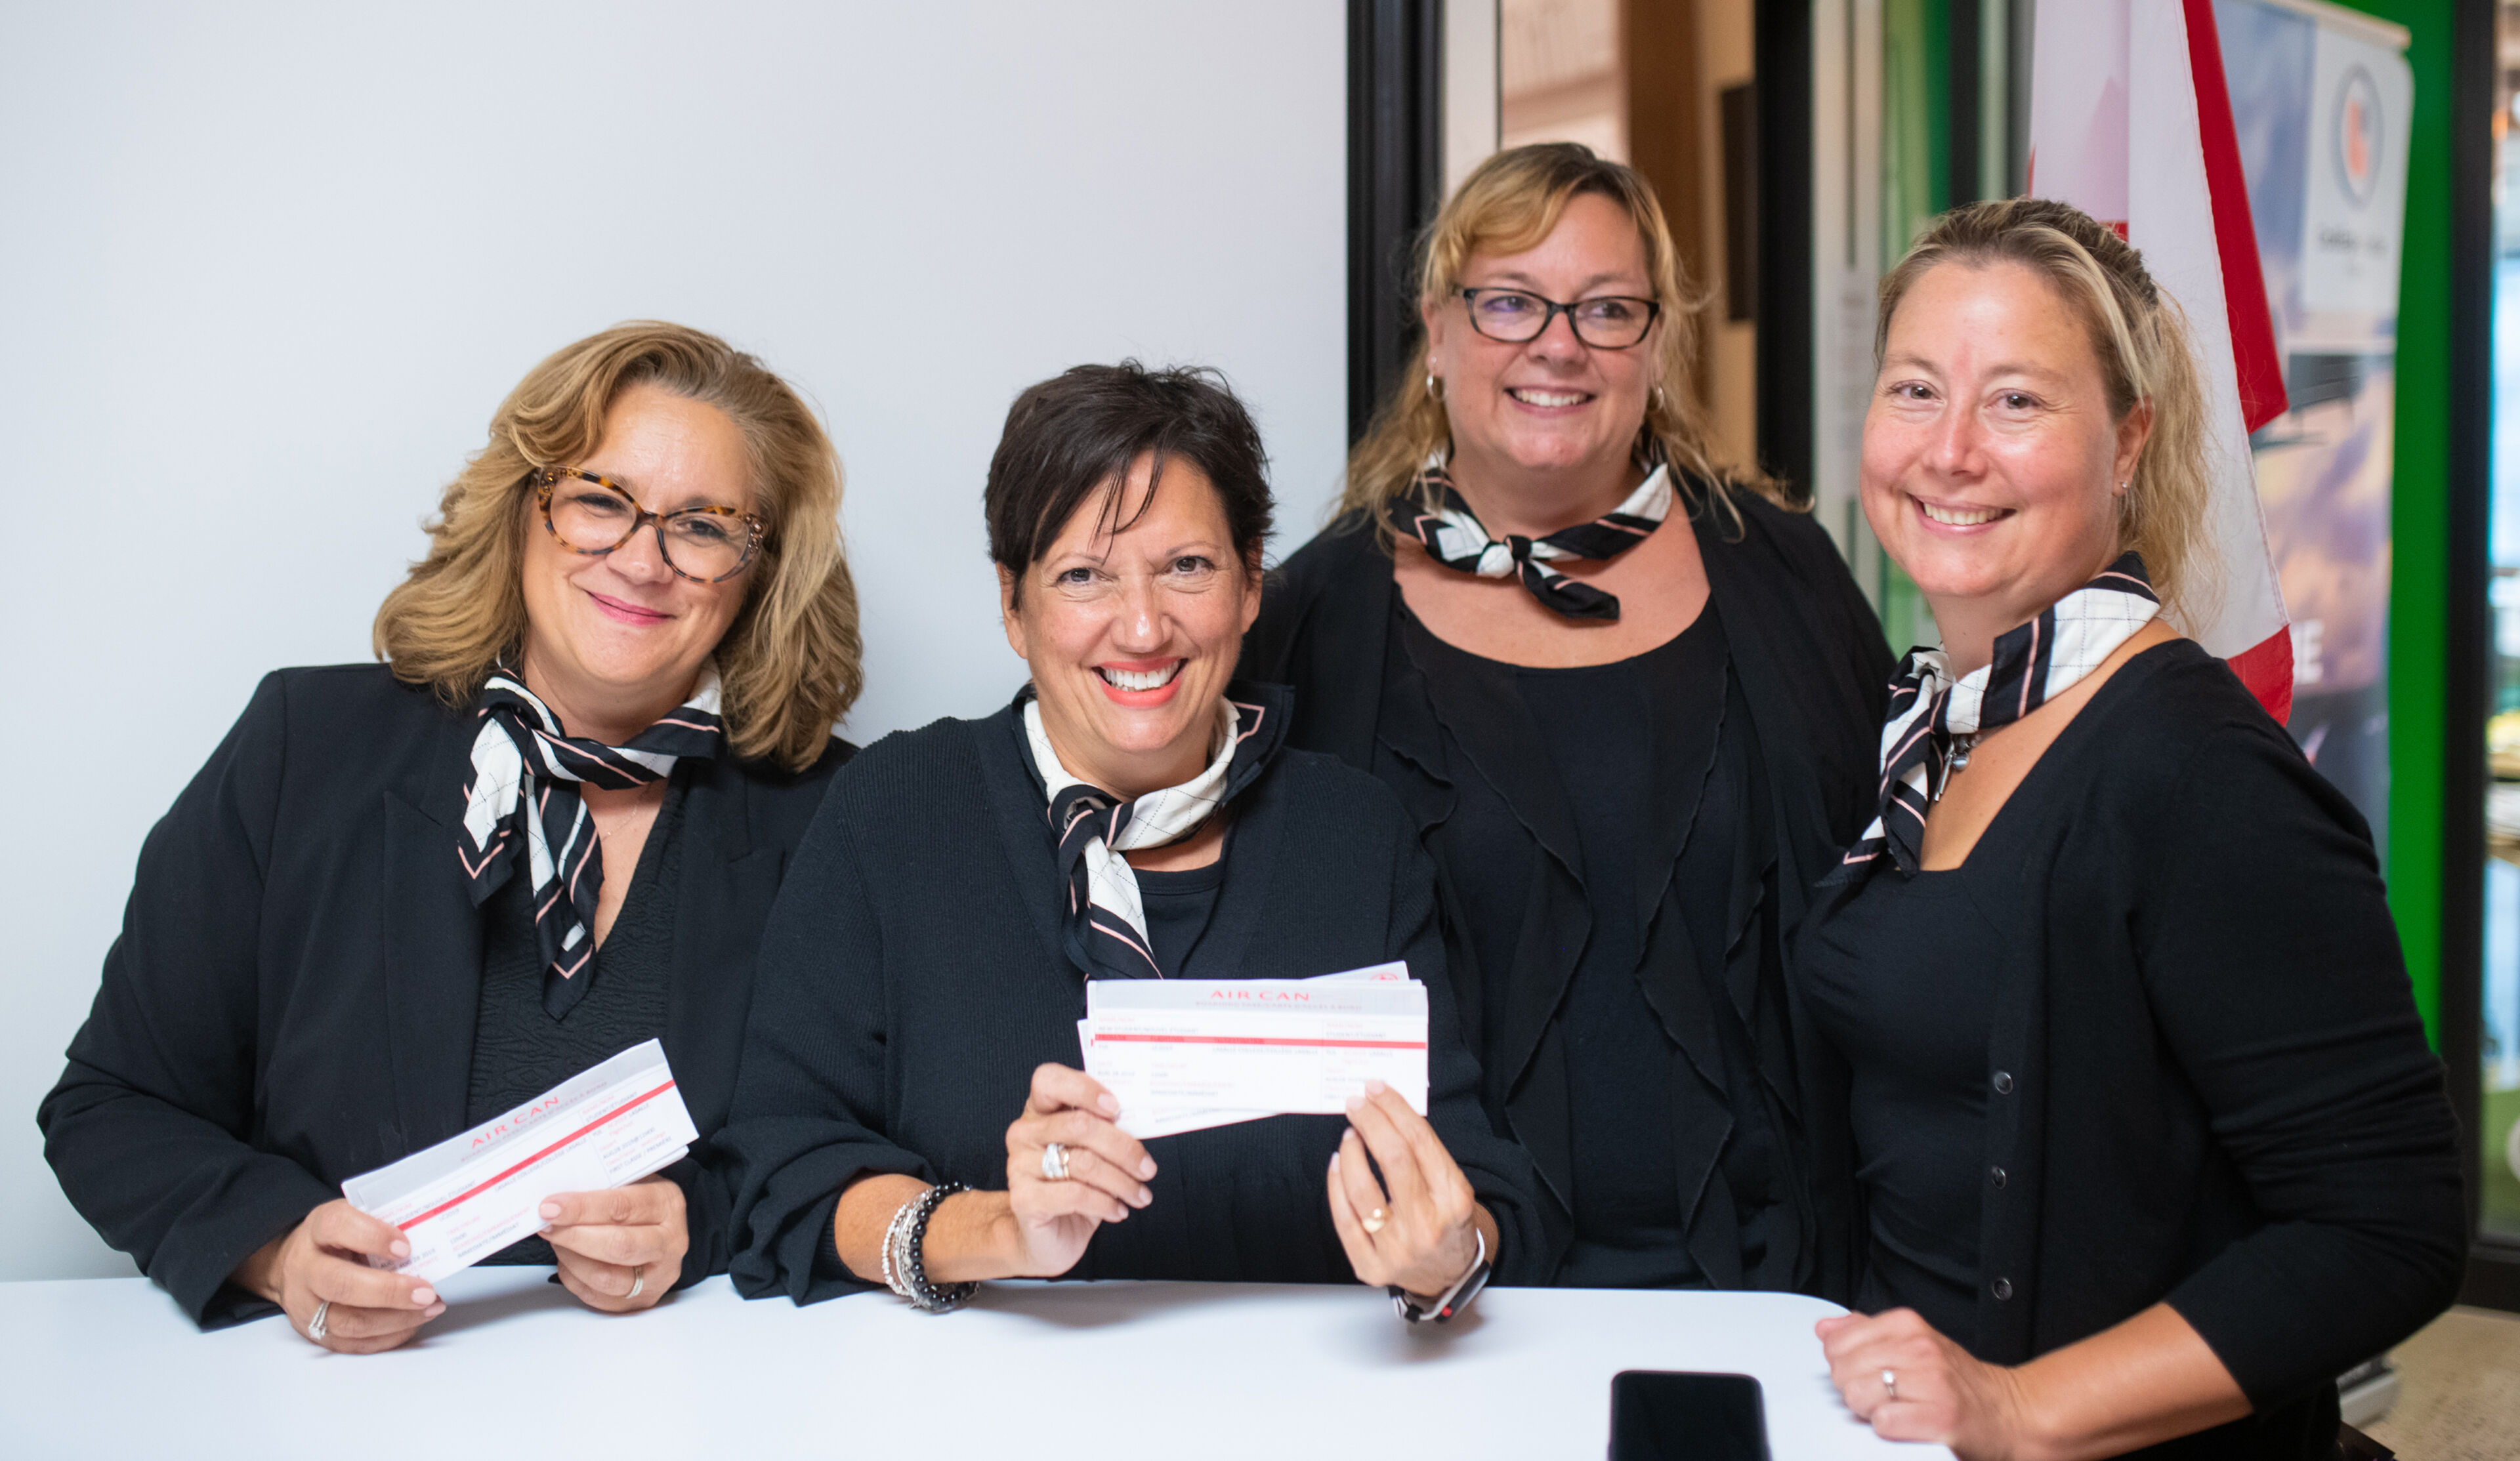 Quatre hôtesses souriantes lors d'un événement d'entreprise, en uniformes noirs assortis de foulards, montrant des pass événementiels.